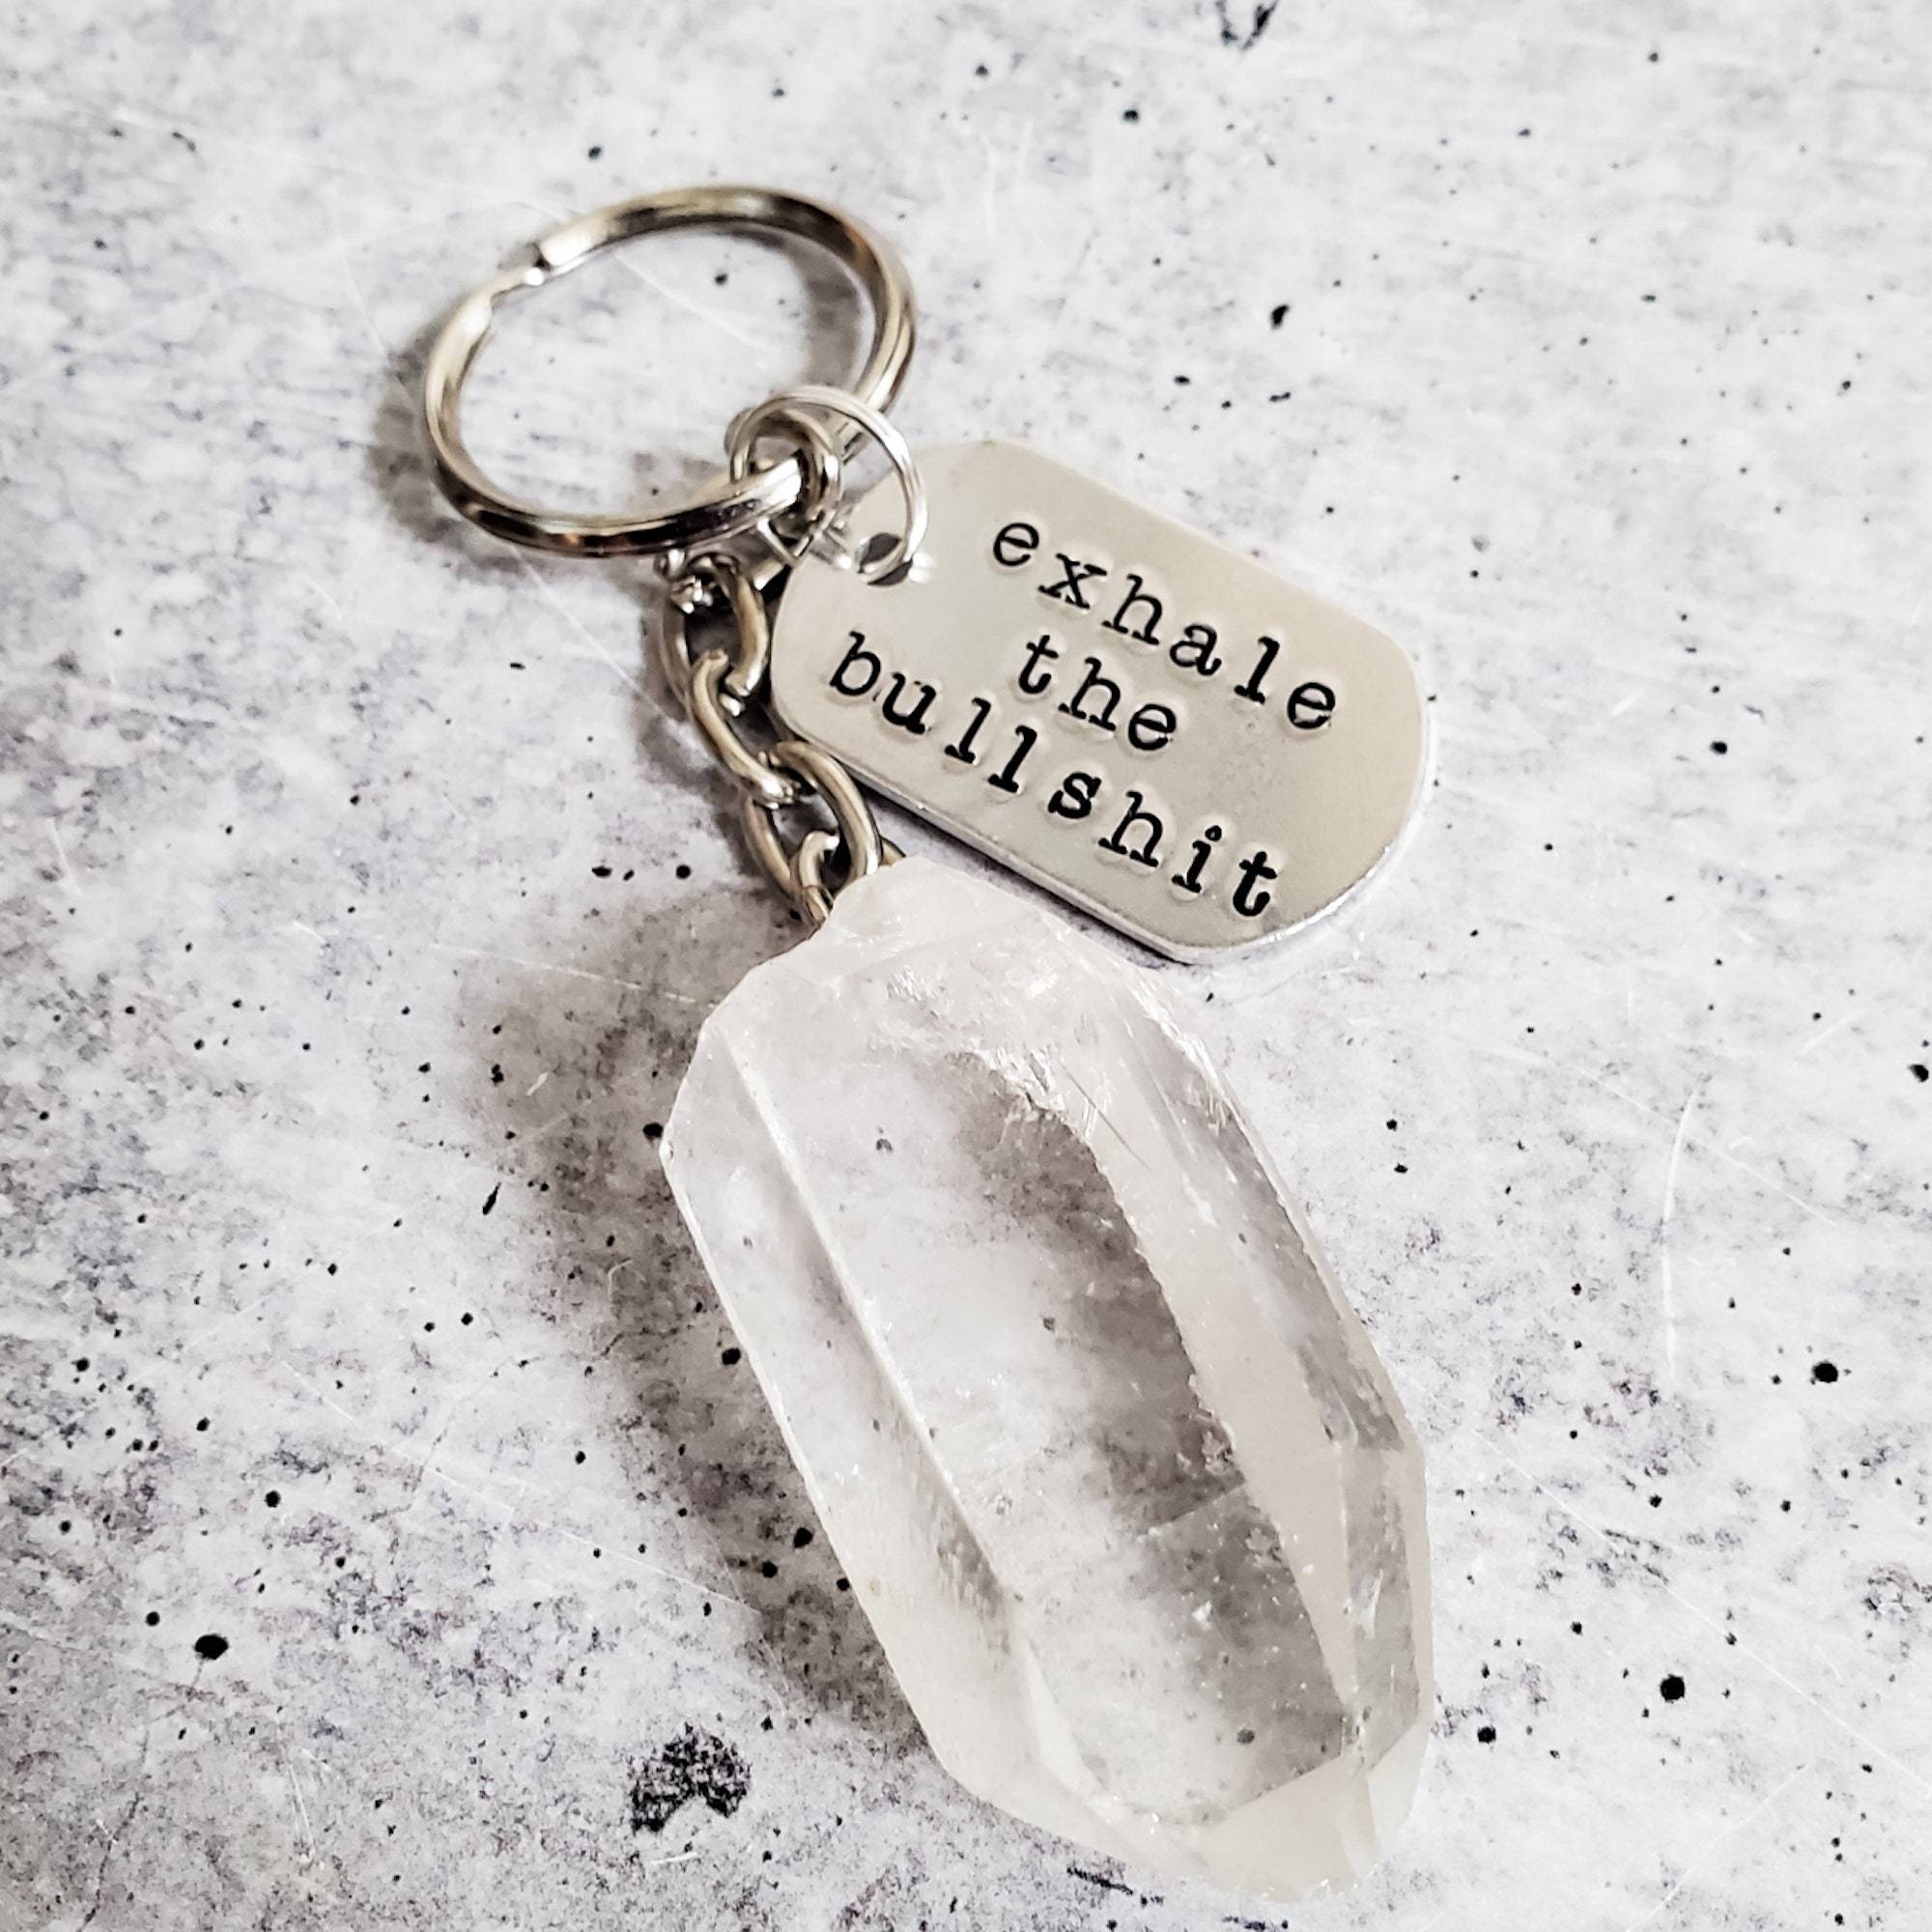 EXHALE THE BULLSHIT Crystal Keychain Salt and Sparkle